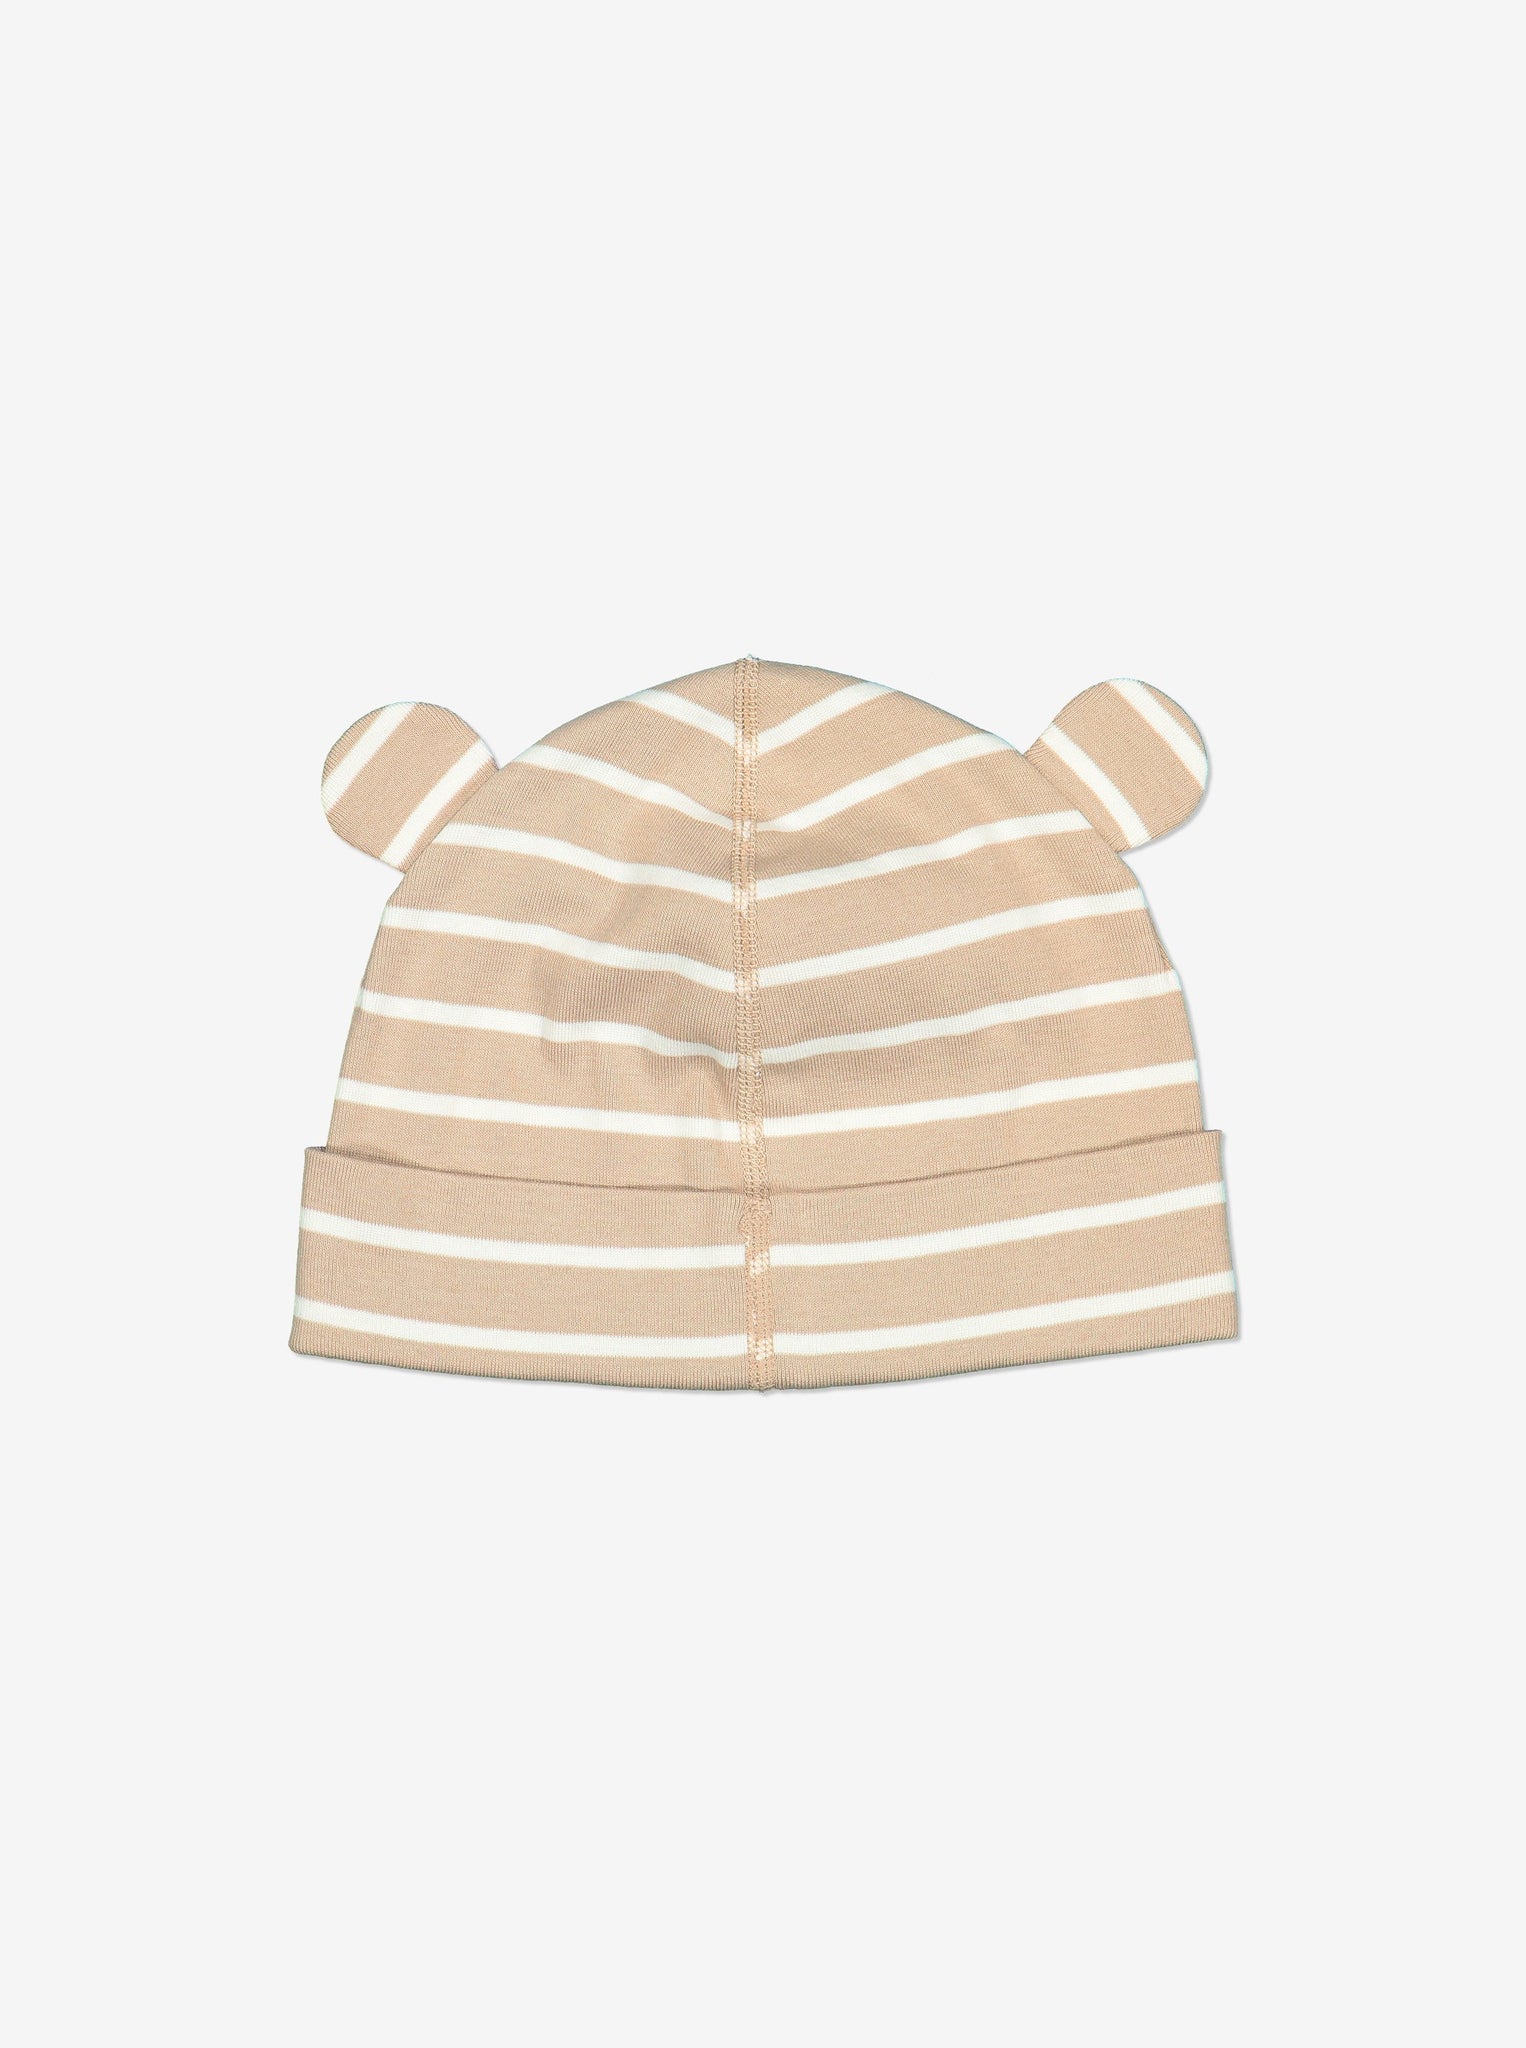 Striped Baby Beanie Hat-Unisex-Newborn-2y-Brown